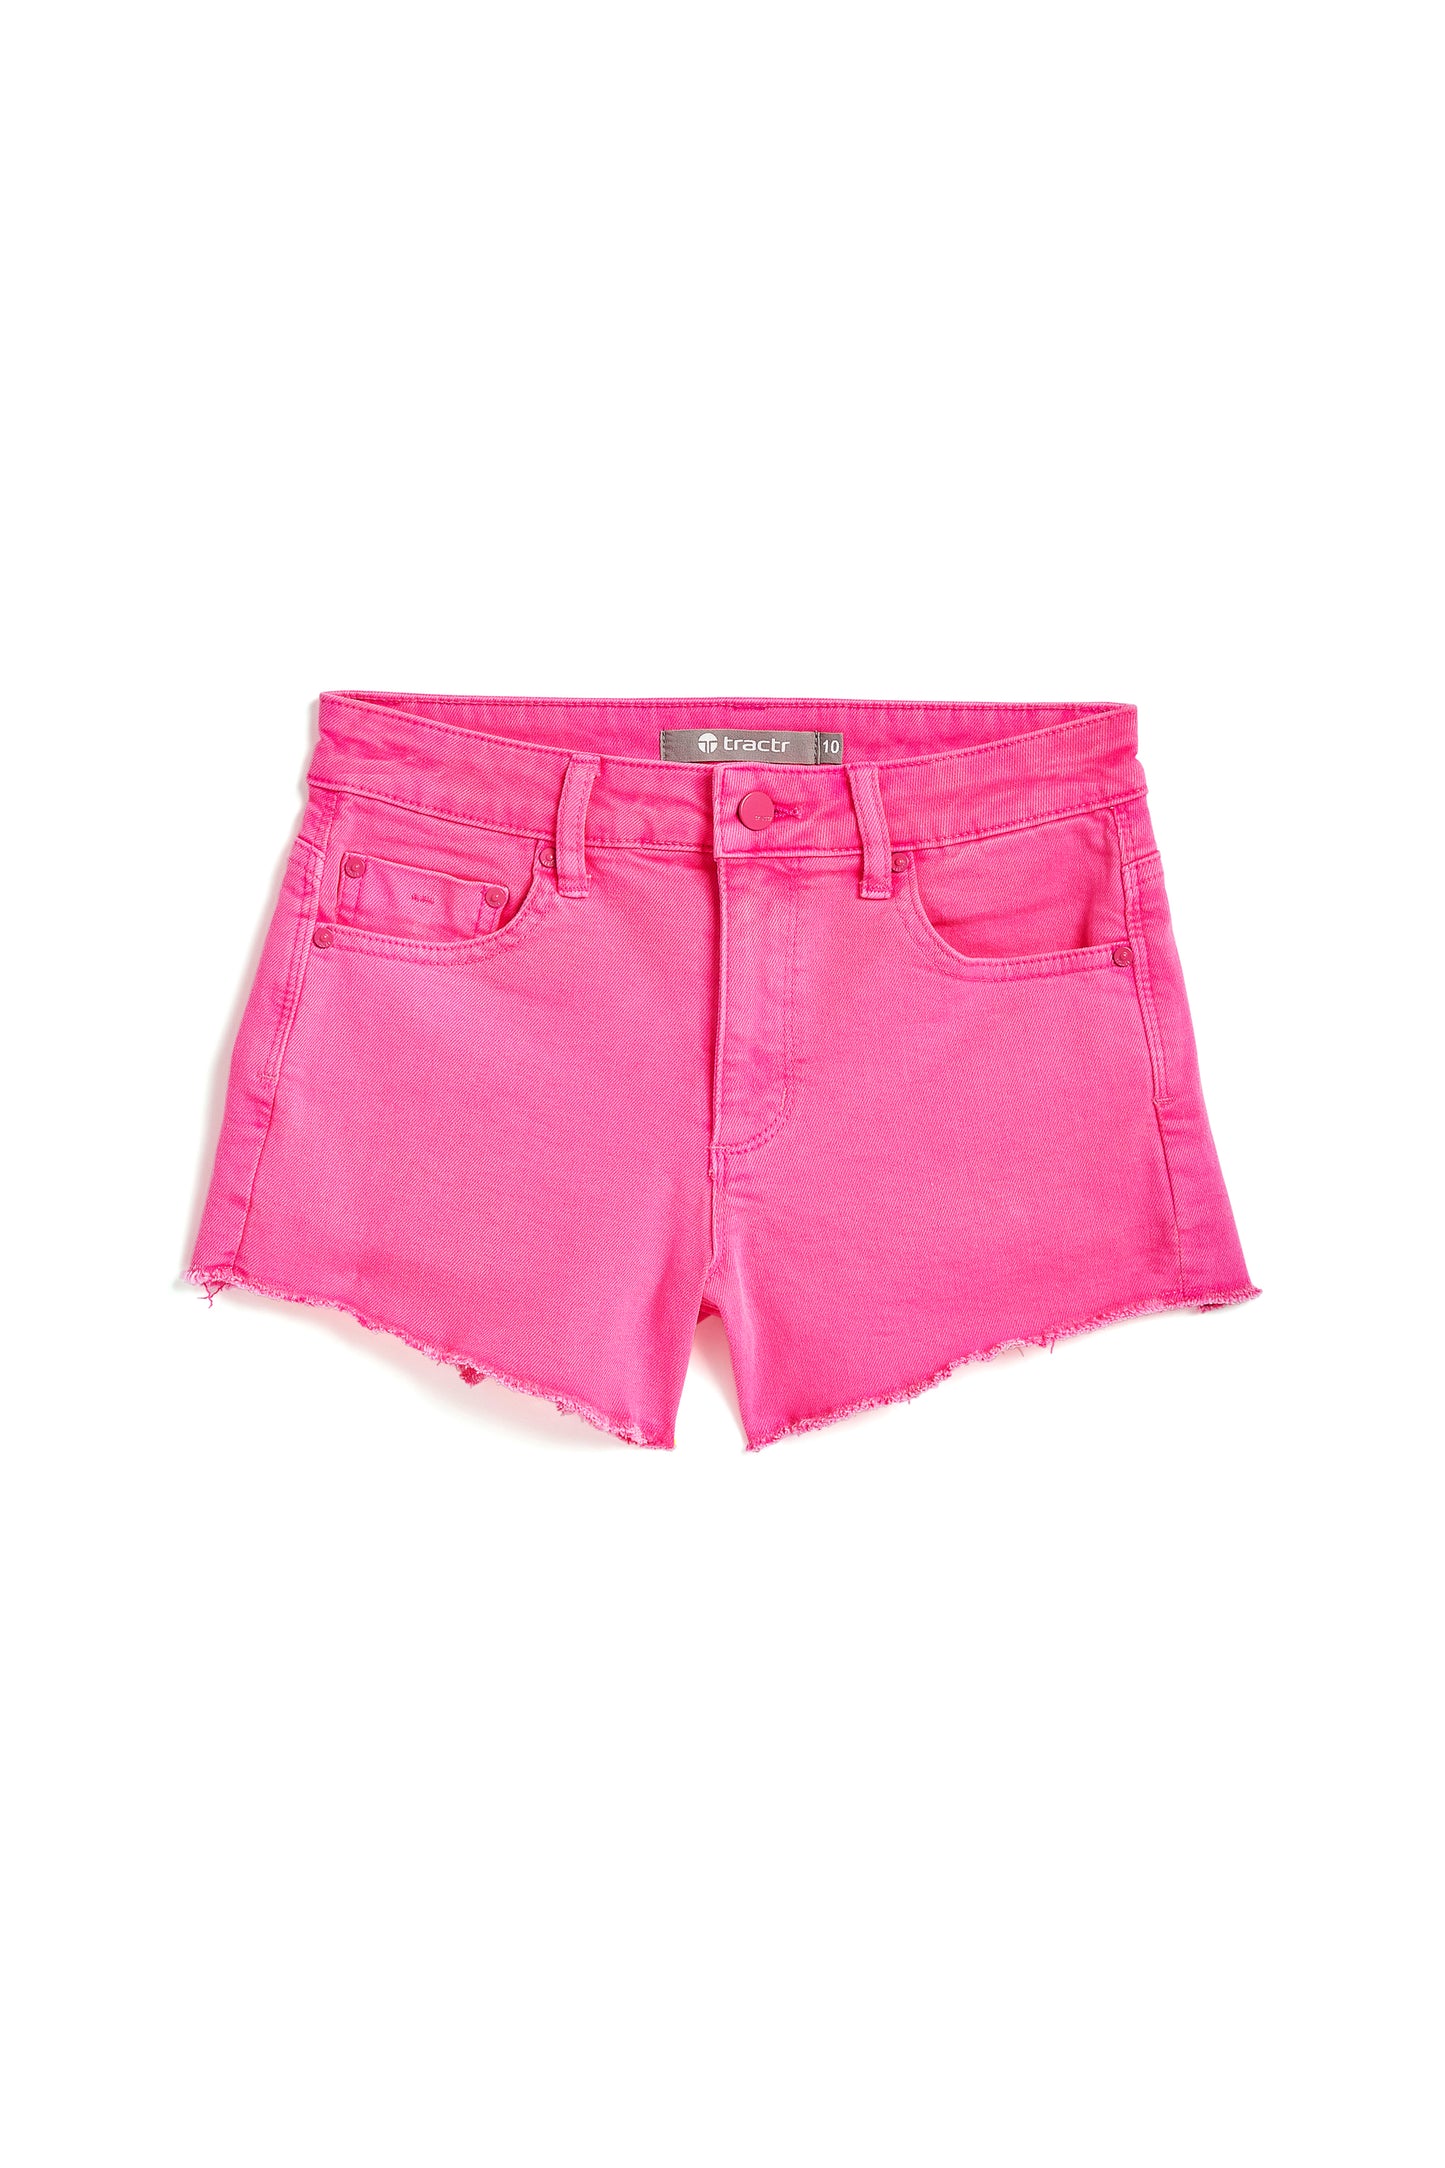 Brittany - Frey Hem Neon Shorts